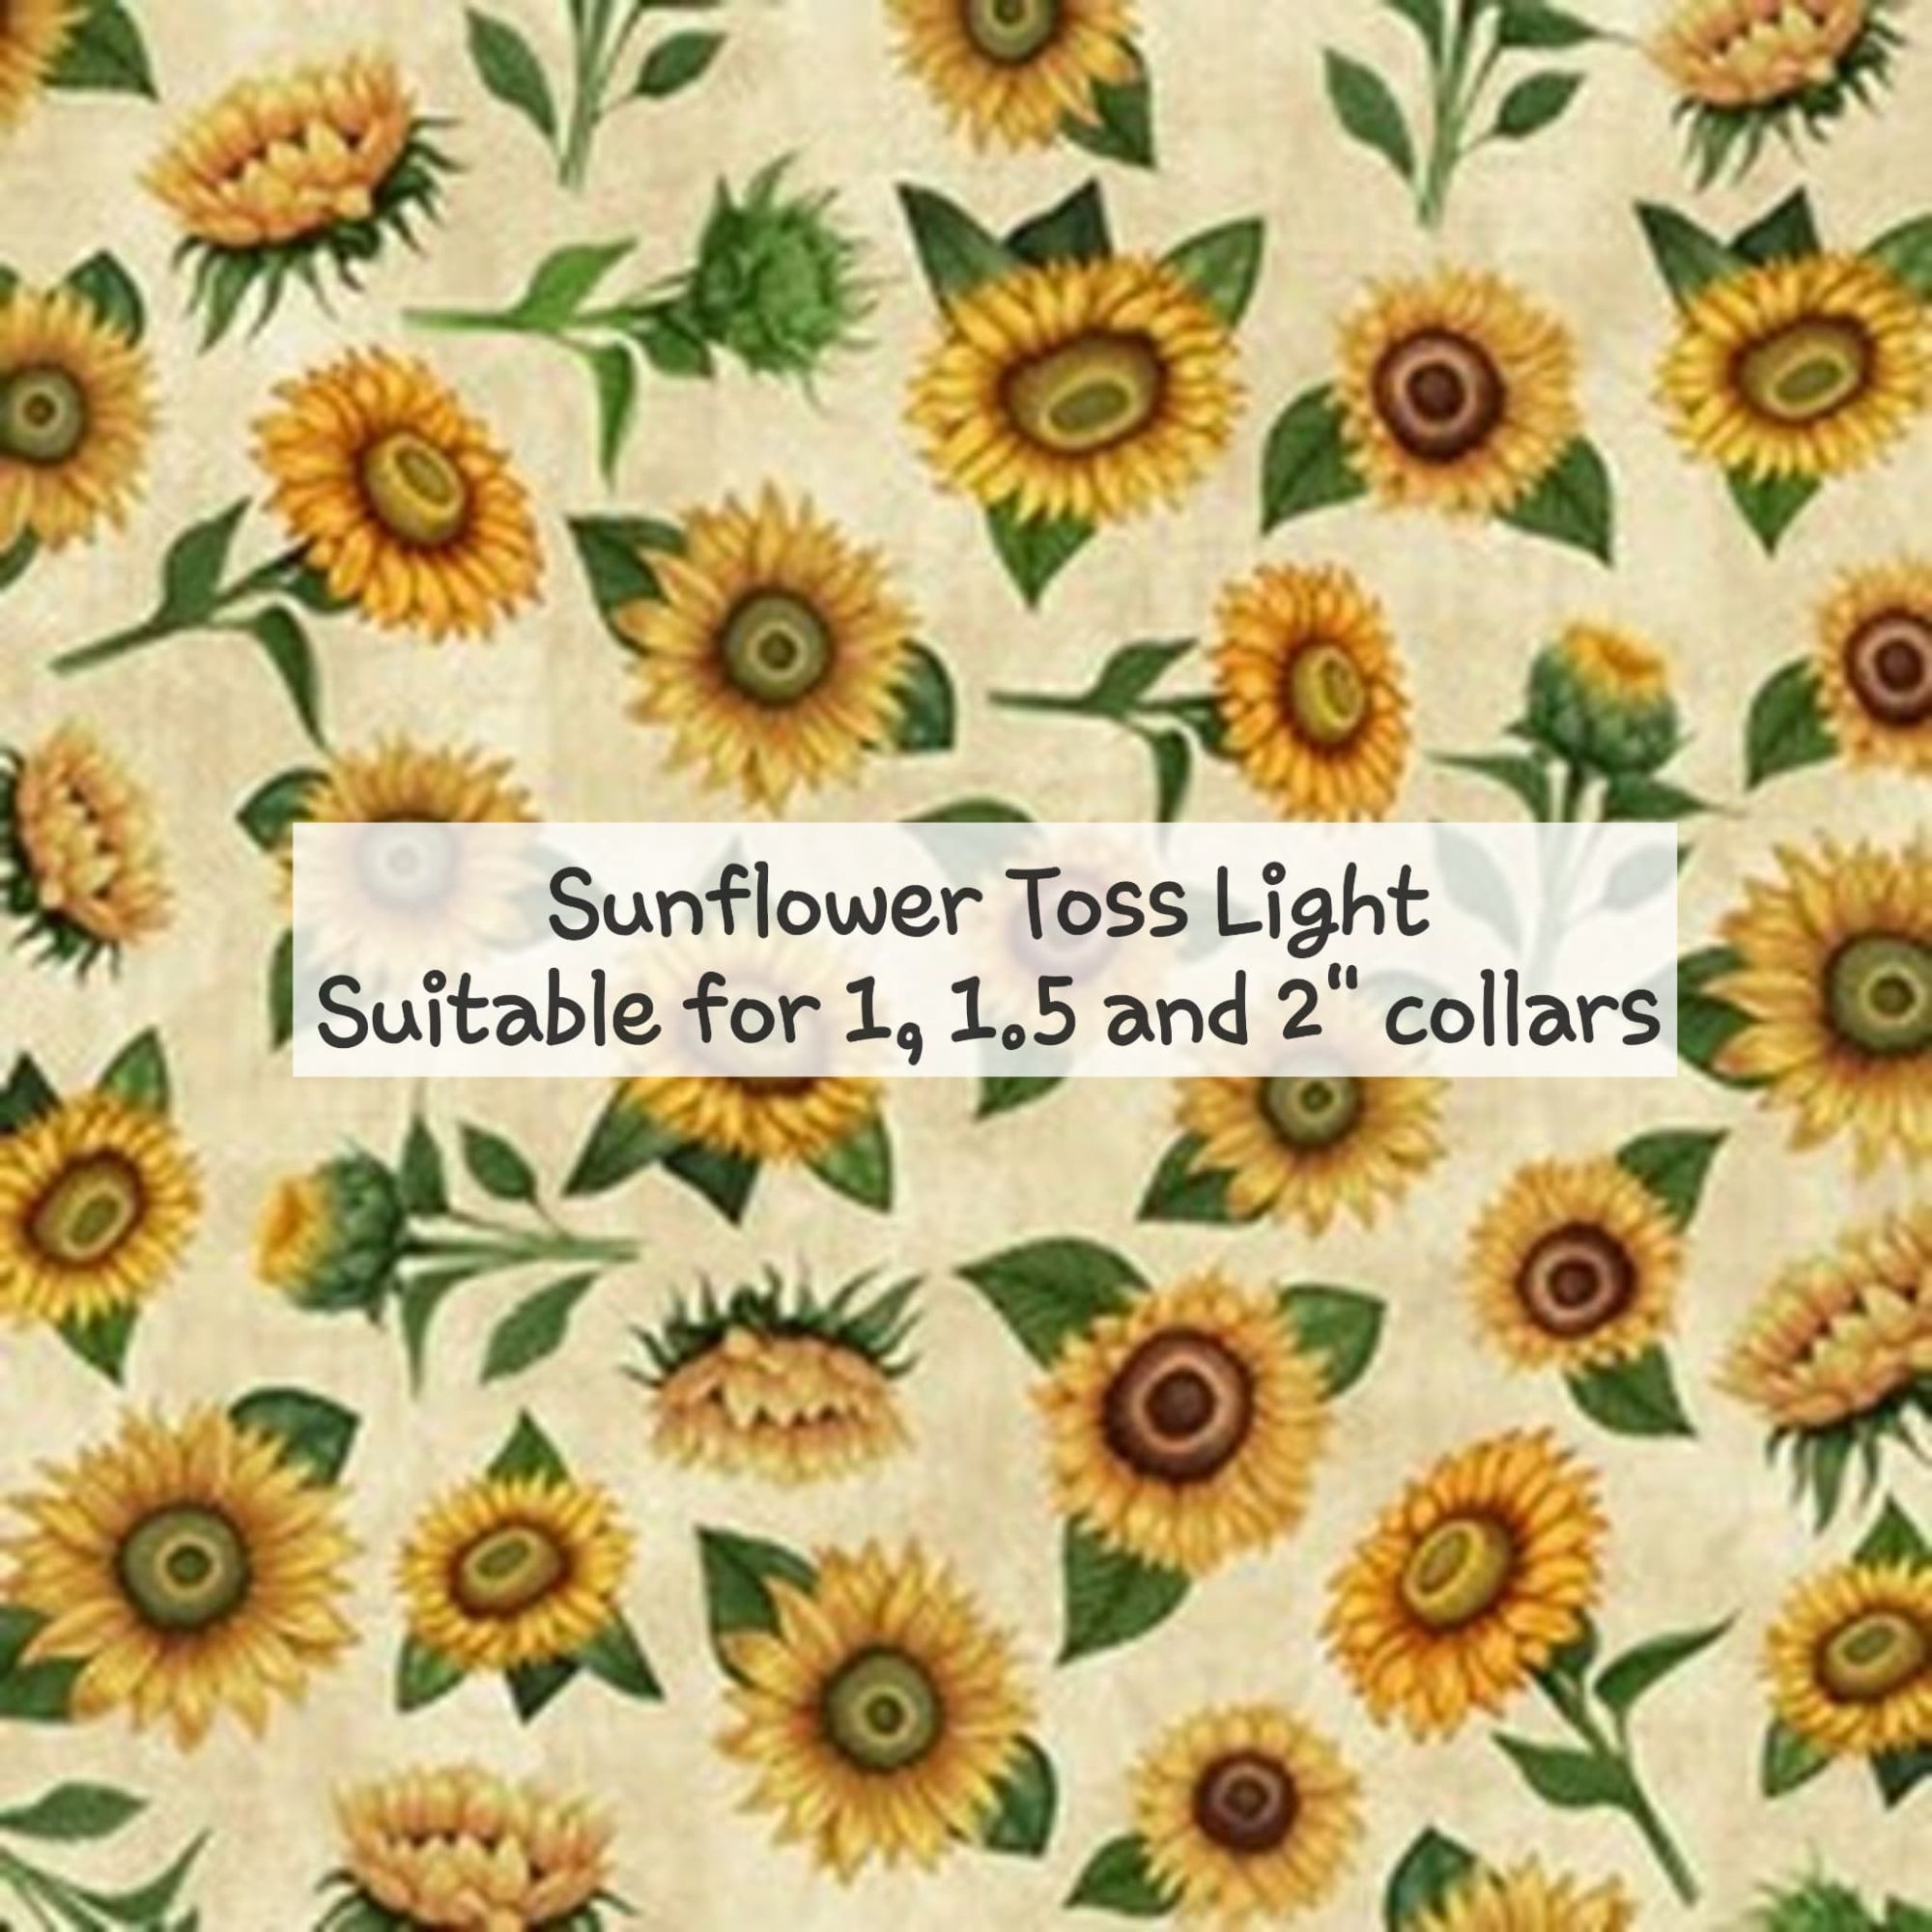 Sunflower toss light